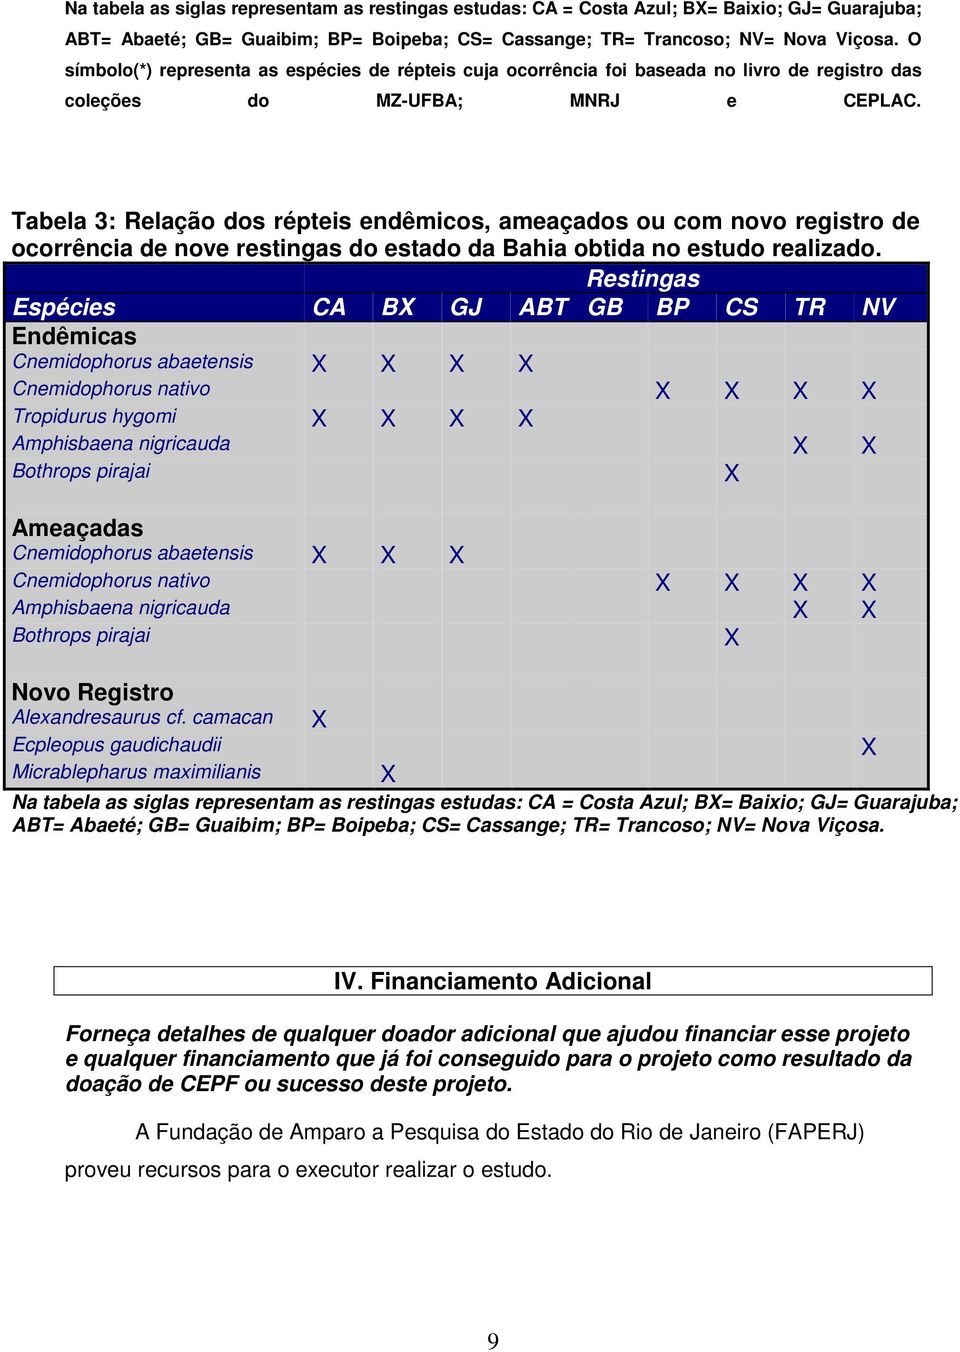 Tabela 3: Relação dos répteis endêmicos, ameaçados ou com novo registro de ocorrência de nove restingas do estado da Bahia obtida no estudo realizado.